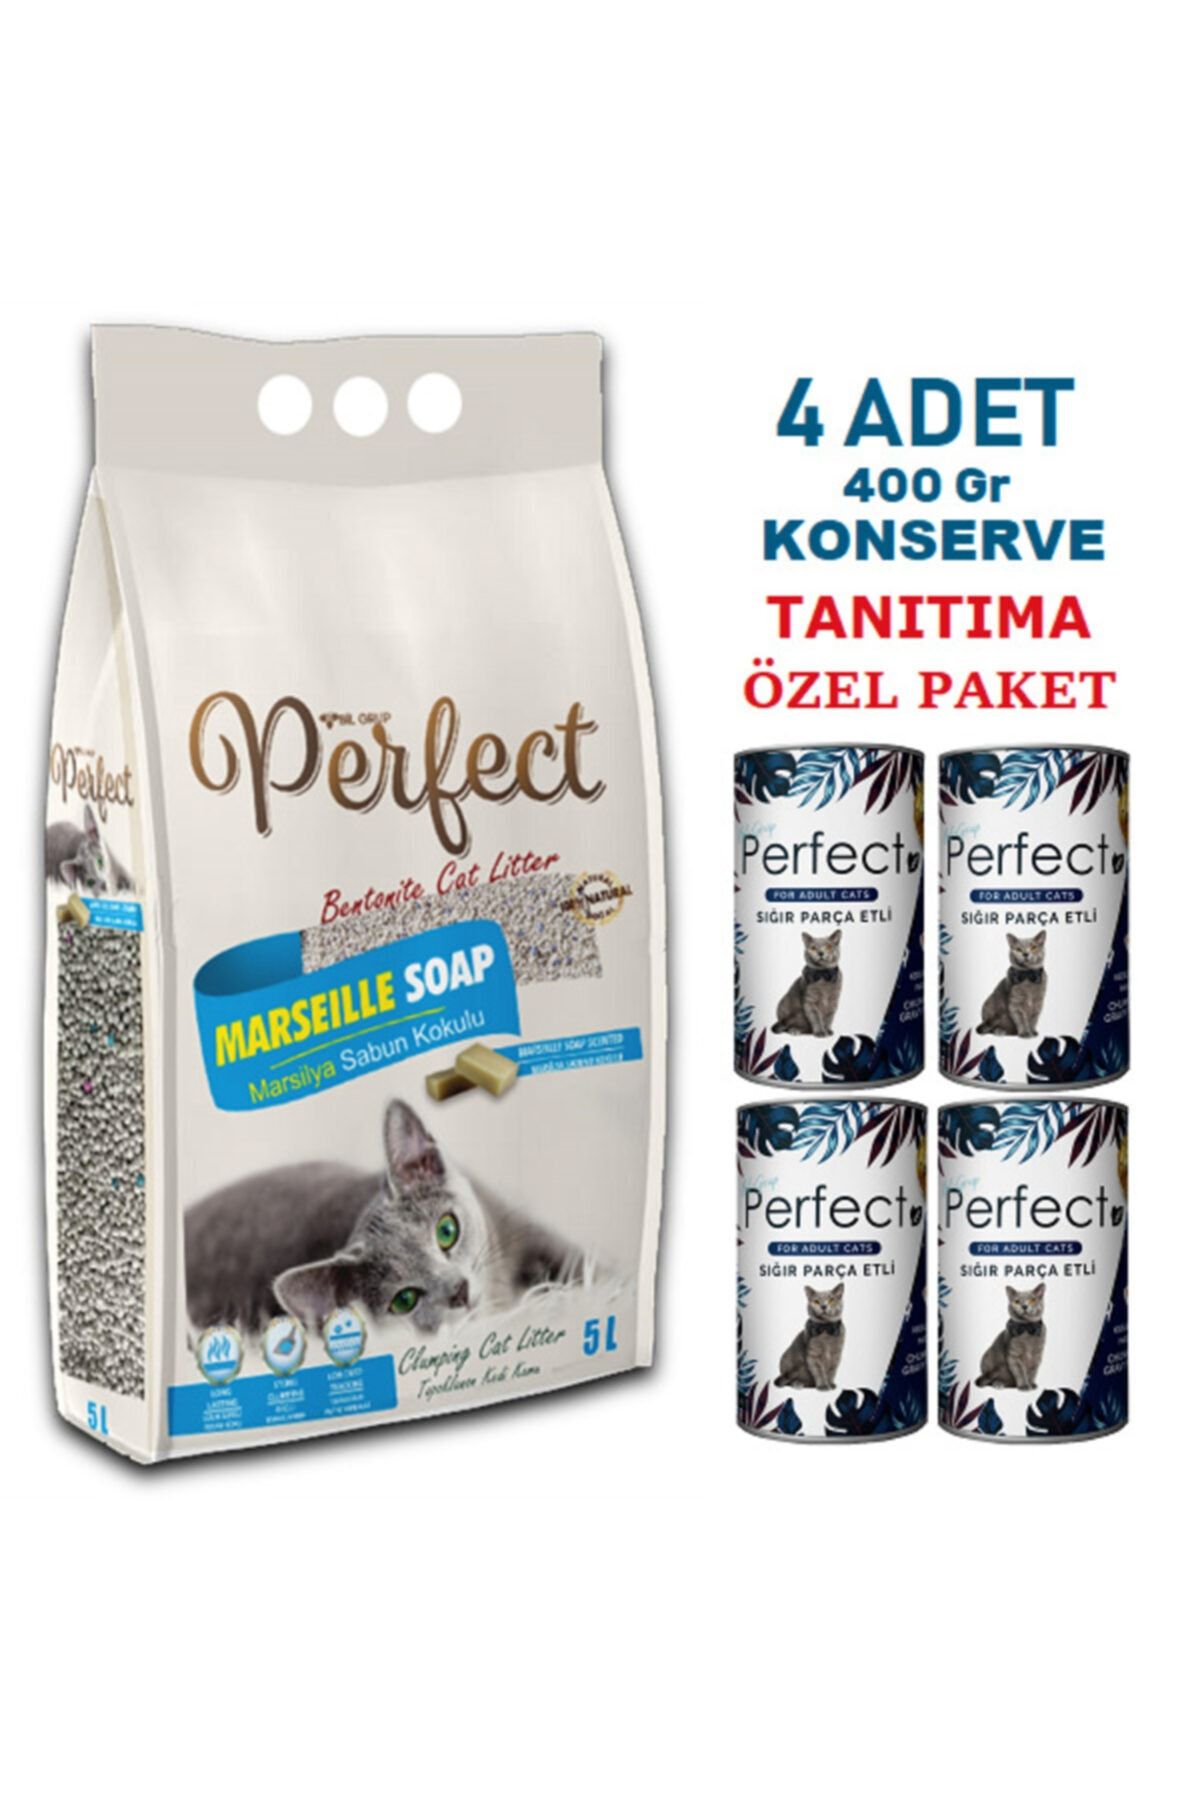 PERFECT 5 Lt Ince Marsilya Sabun Kokulu Kedi Kumu & 4 Adet Konserve Tanıtıma Özel Fiyat